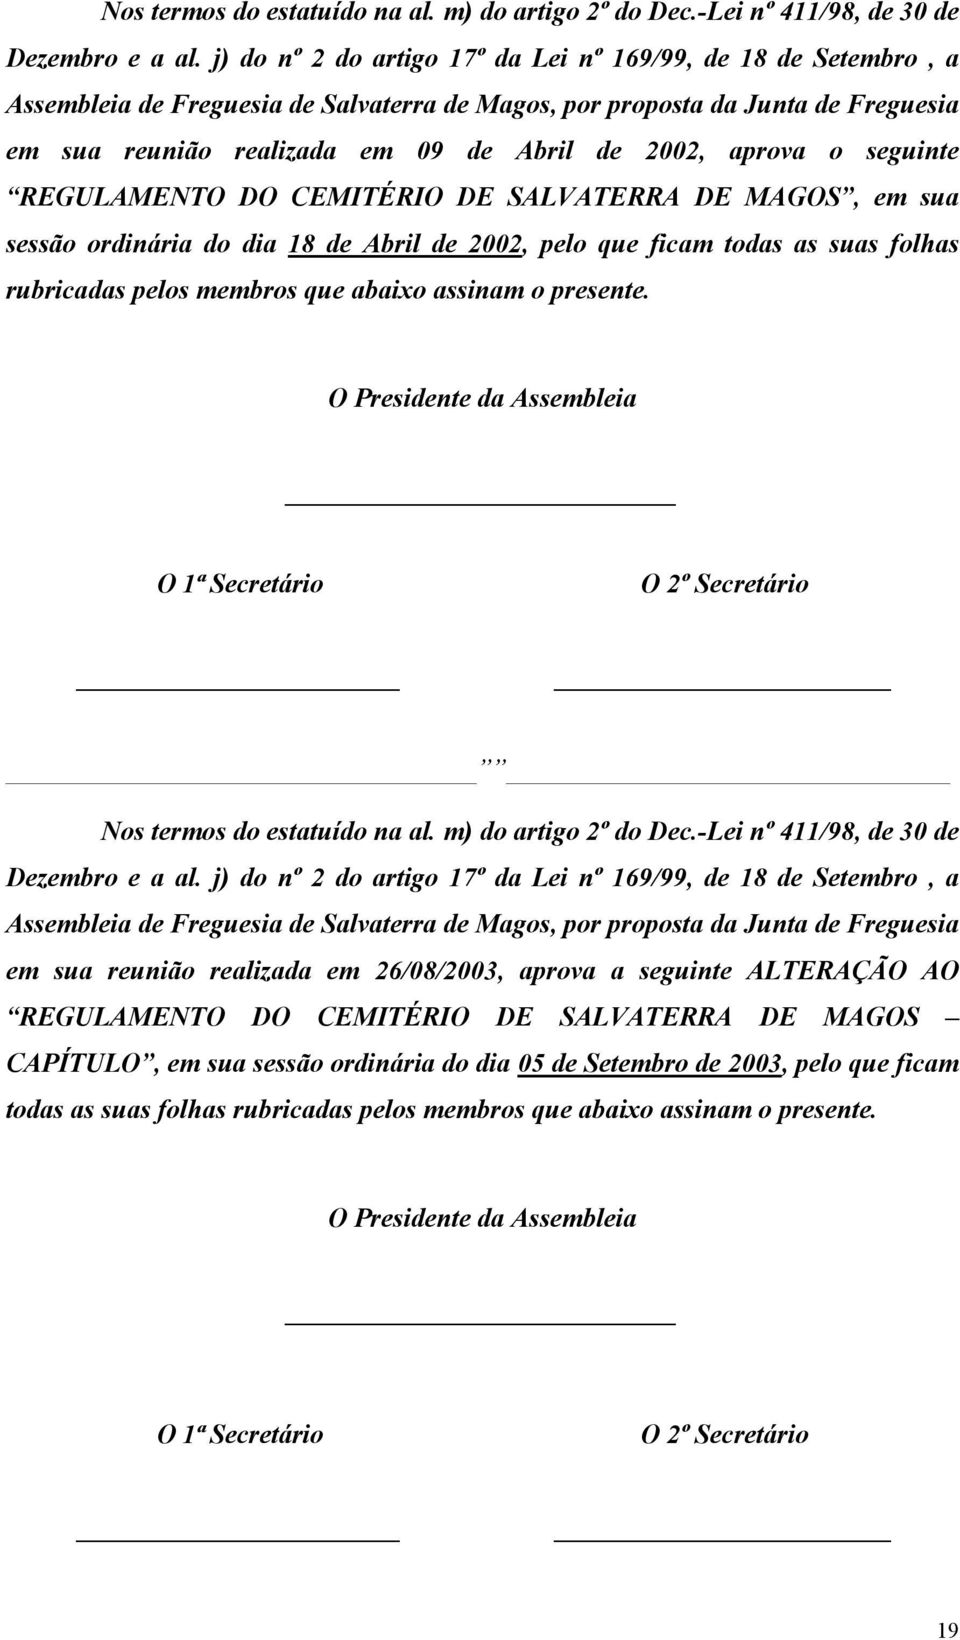 aprova o seguinte REGULAMENTO DO CEMITÉRIO DE SALVATERRA DE MAGOS, em sua sessão ordinária do dia 18 de Abril de 2002, pelo que ficam todas as suas folhas rubricadas pelos membros que abaixo assinam